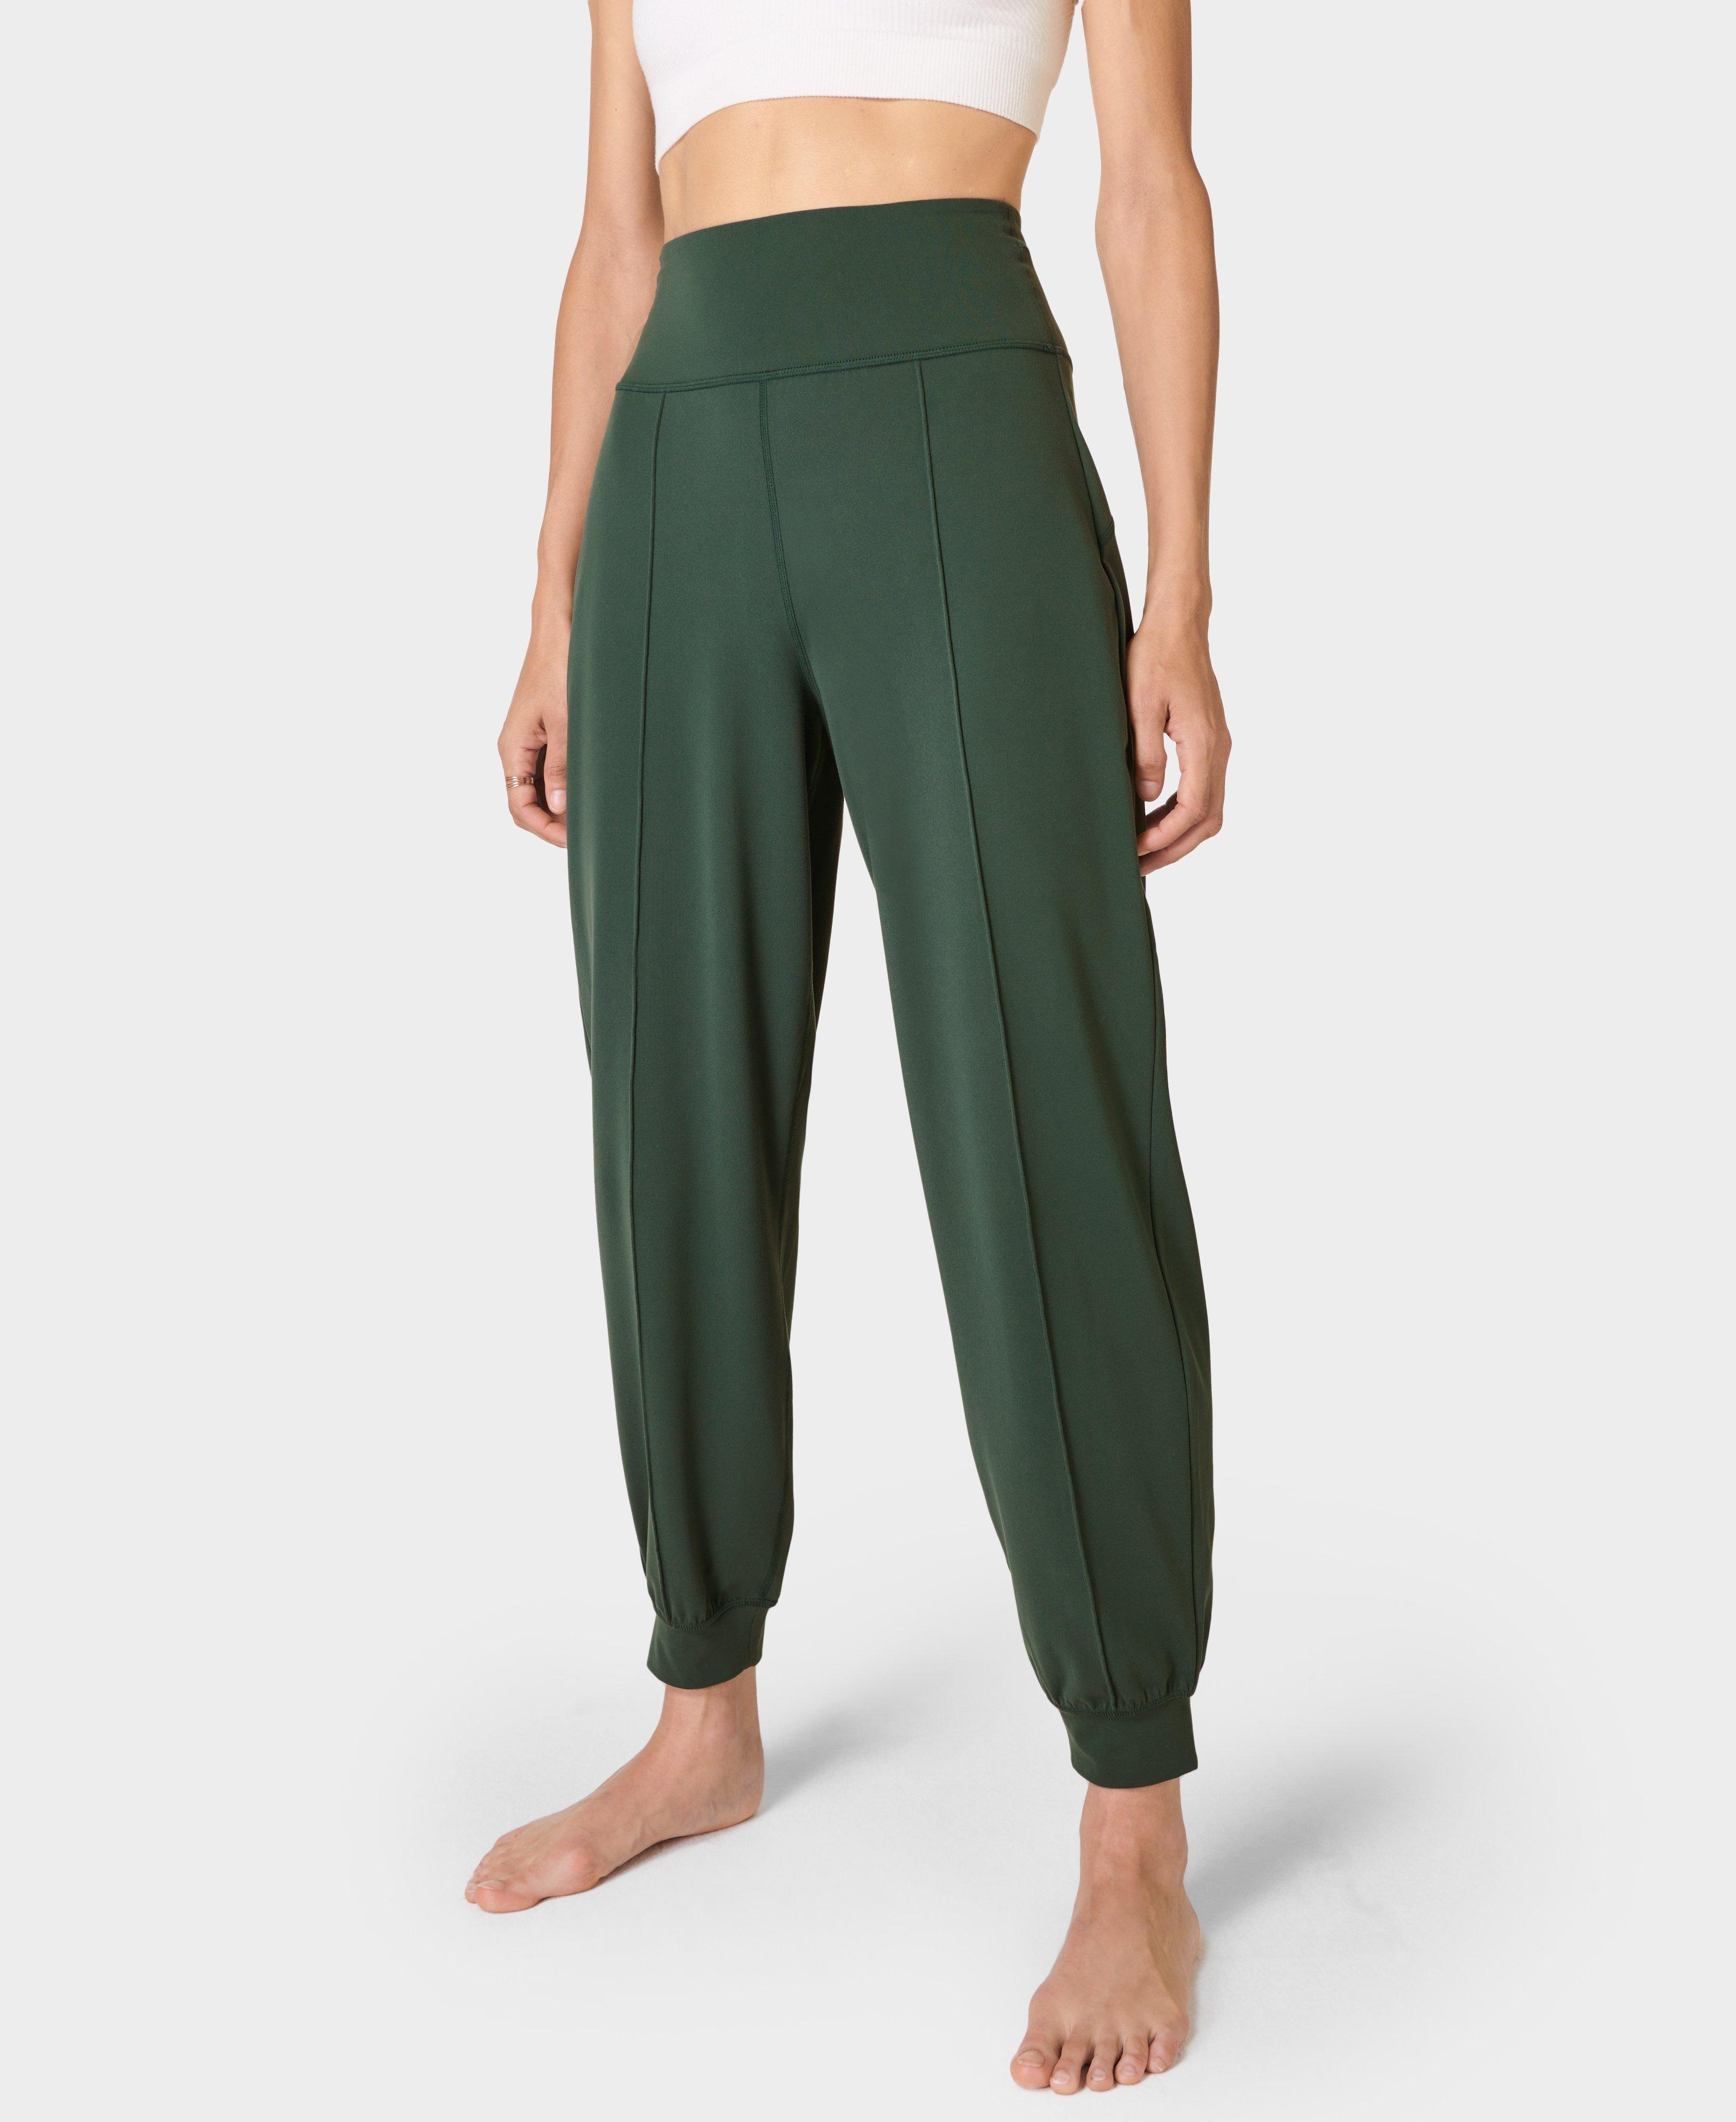 Hey Honey Regular Workout Pants in Green, Jade